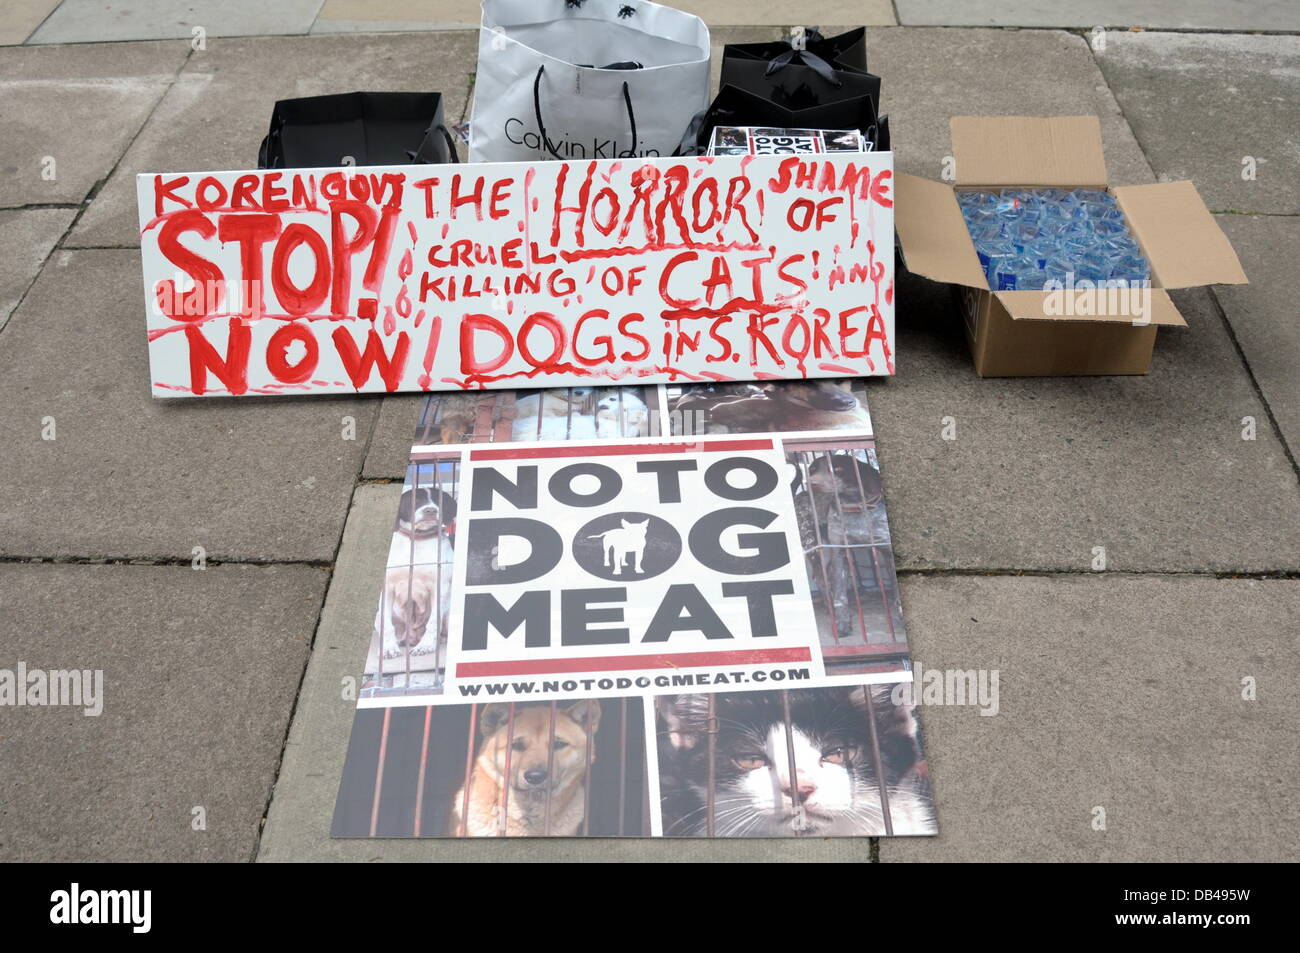 Plakate Plakate auf den Boden-Protest gegen die Republik Korea, in den nächsten 60 Tagen für den Hund Essen Festival Bokdays außerhalb der koreanischen Botschaft in London. Stockfoto